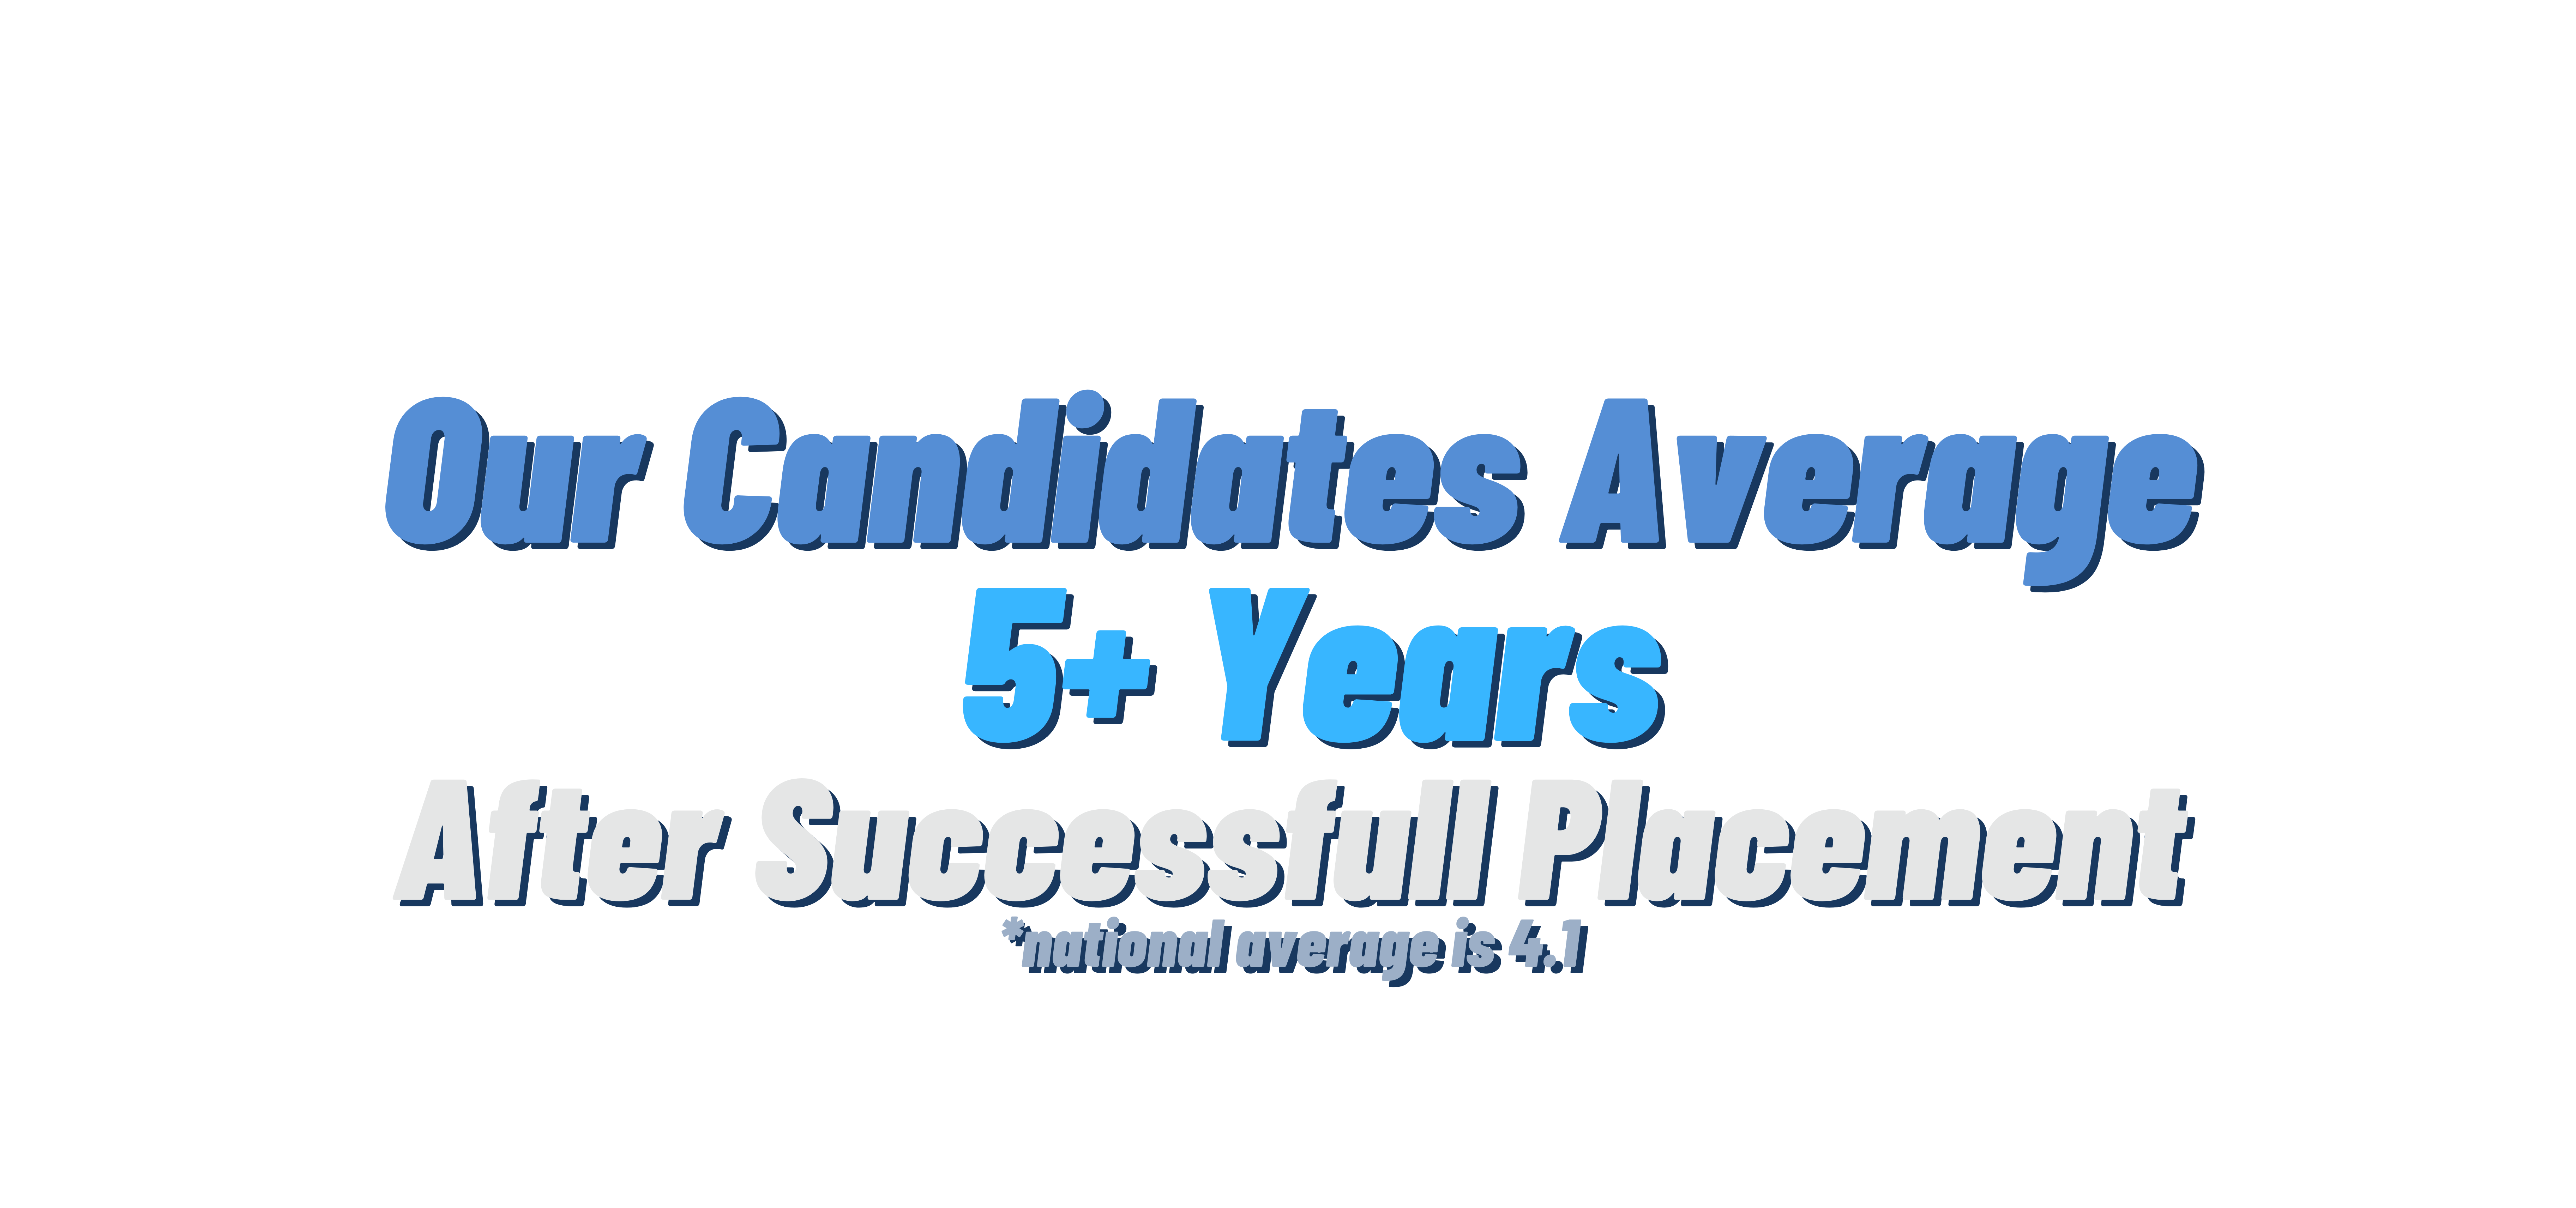 Pedagog Recruiting & Careers Candidate Average